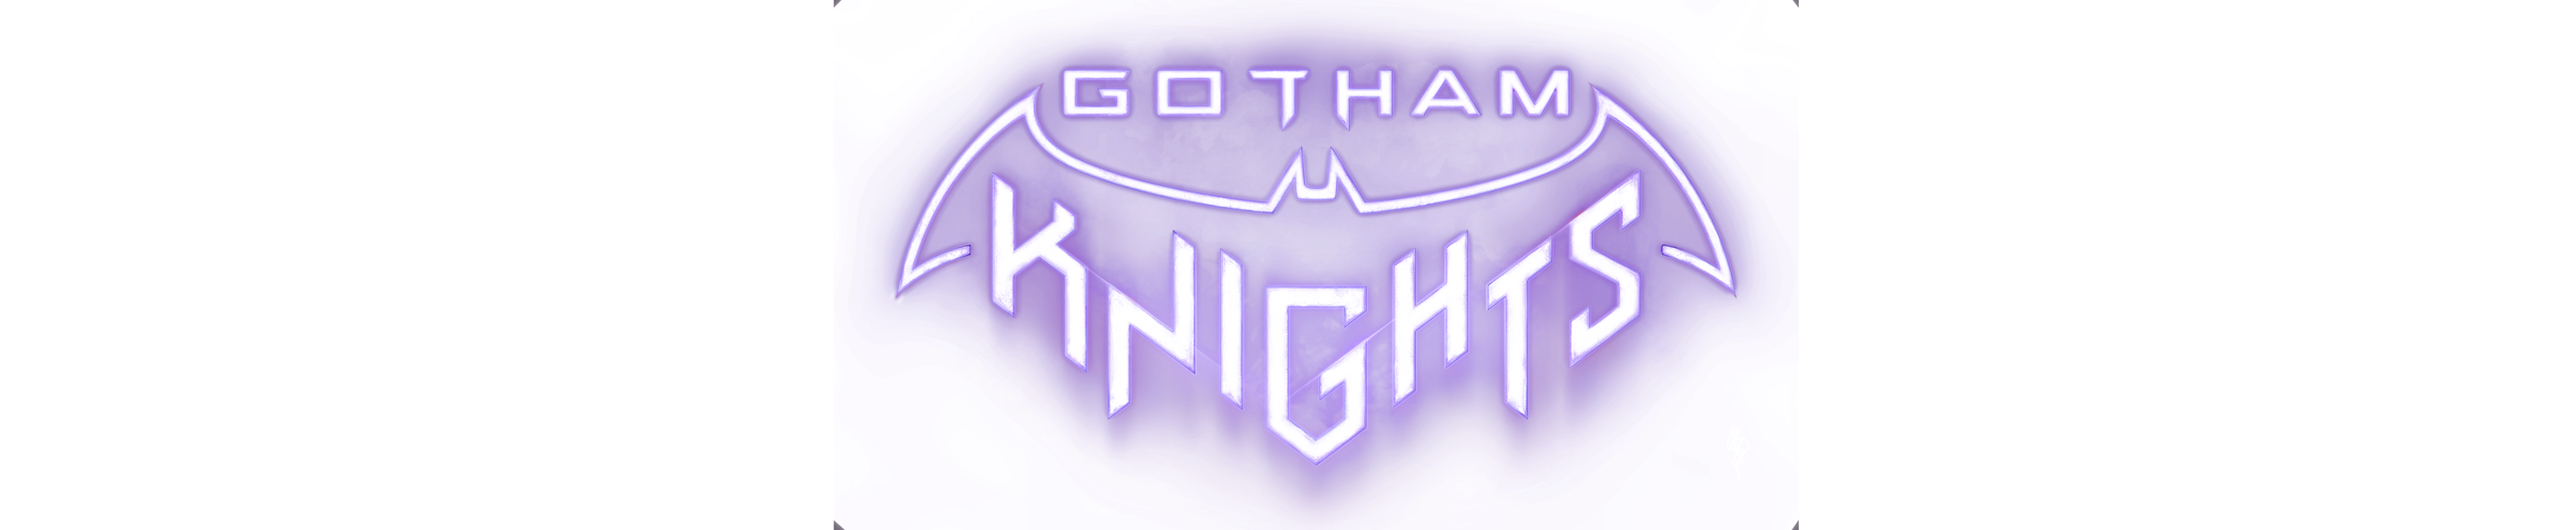 Gotham Knights-logo